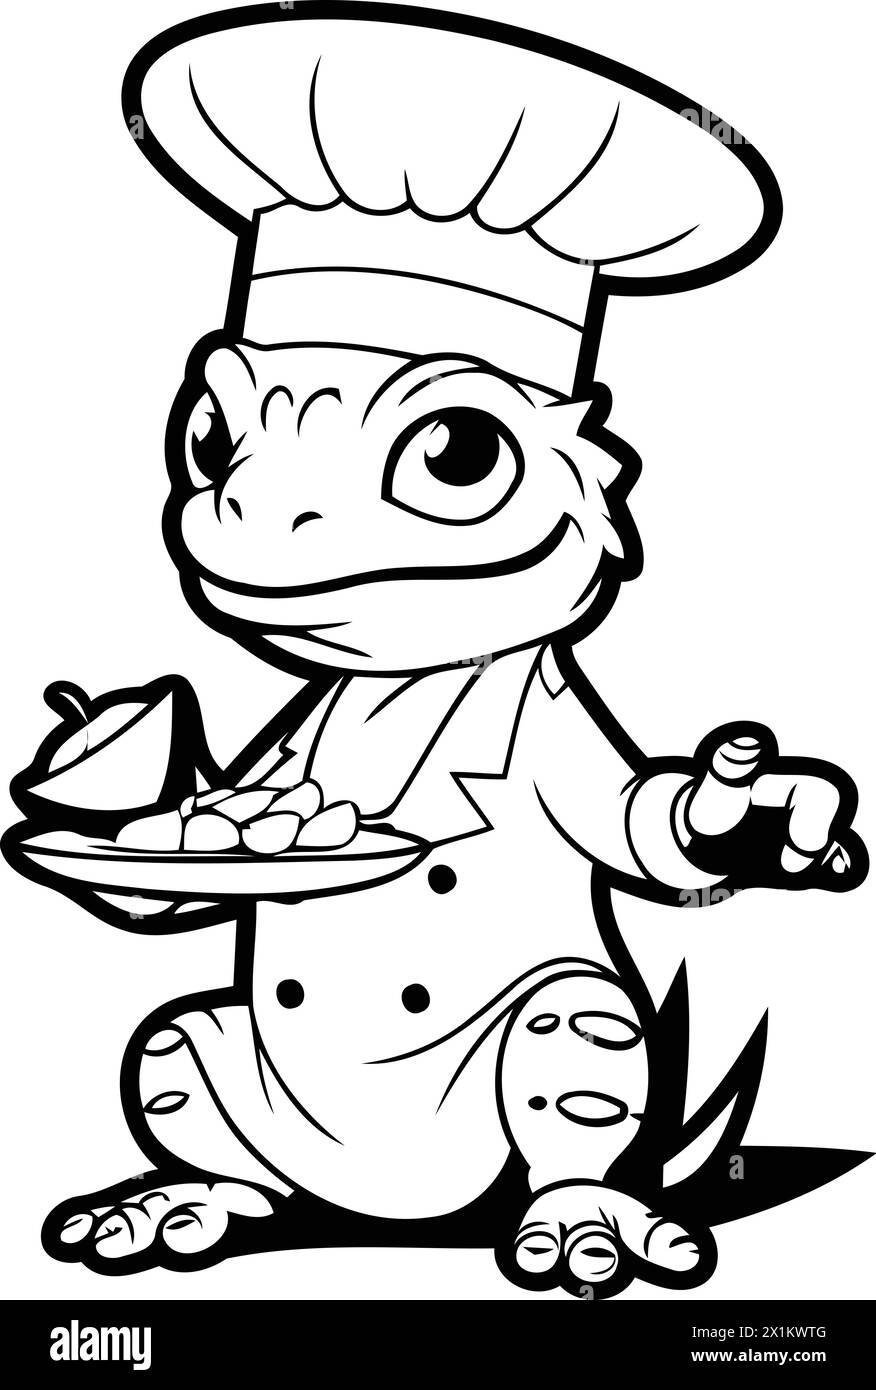 Personnage de dessin animé de chef de grenouille avec de la nourriture dans sa main. Illustration vectorielle. Illustration de Vecteur